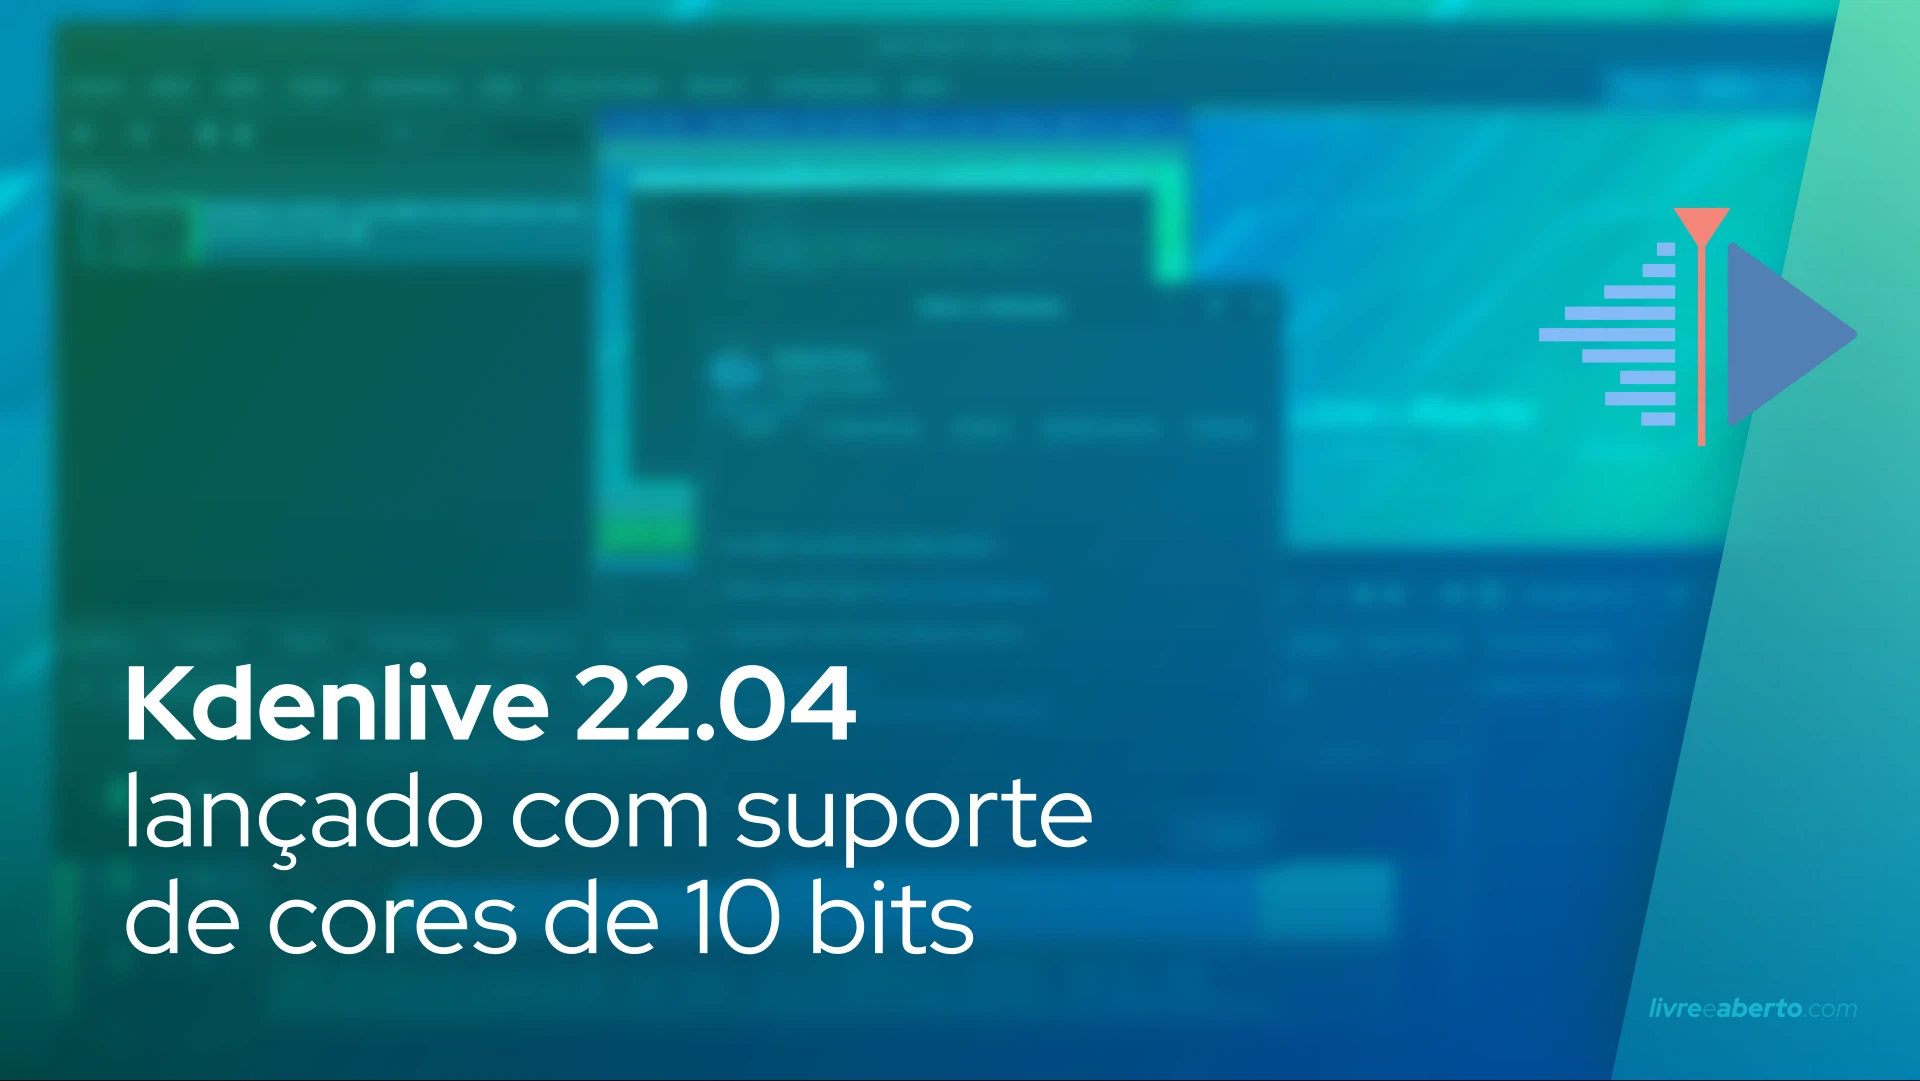 Kdenlive 22.04 lançado com suporte de cores de 10 bits